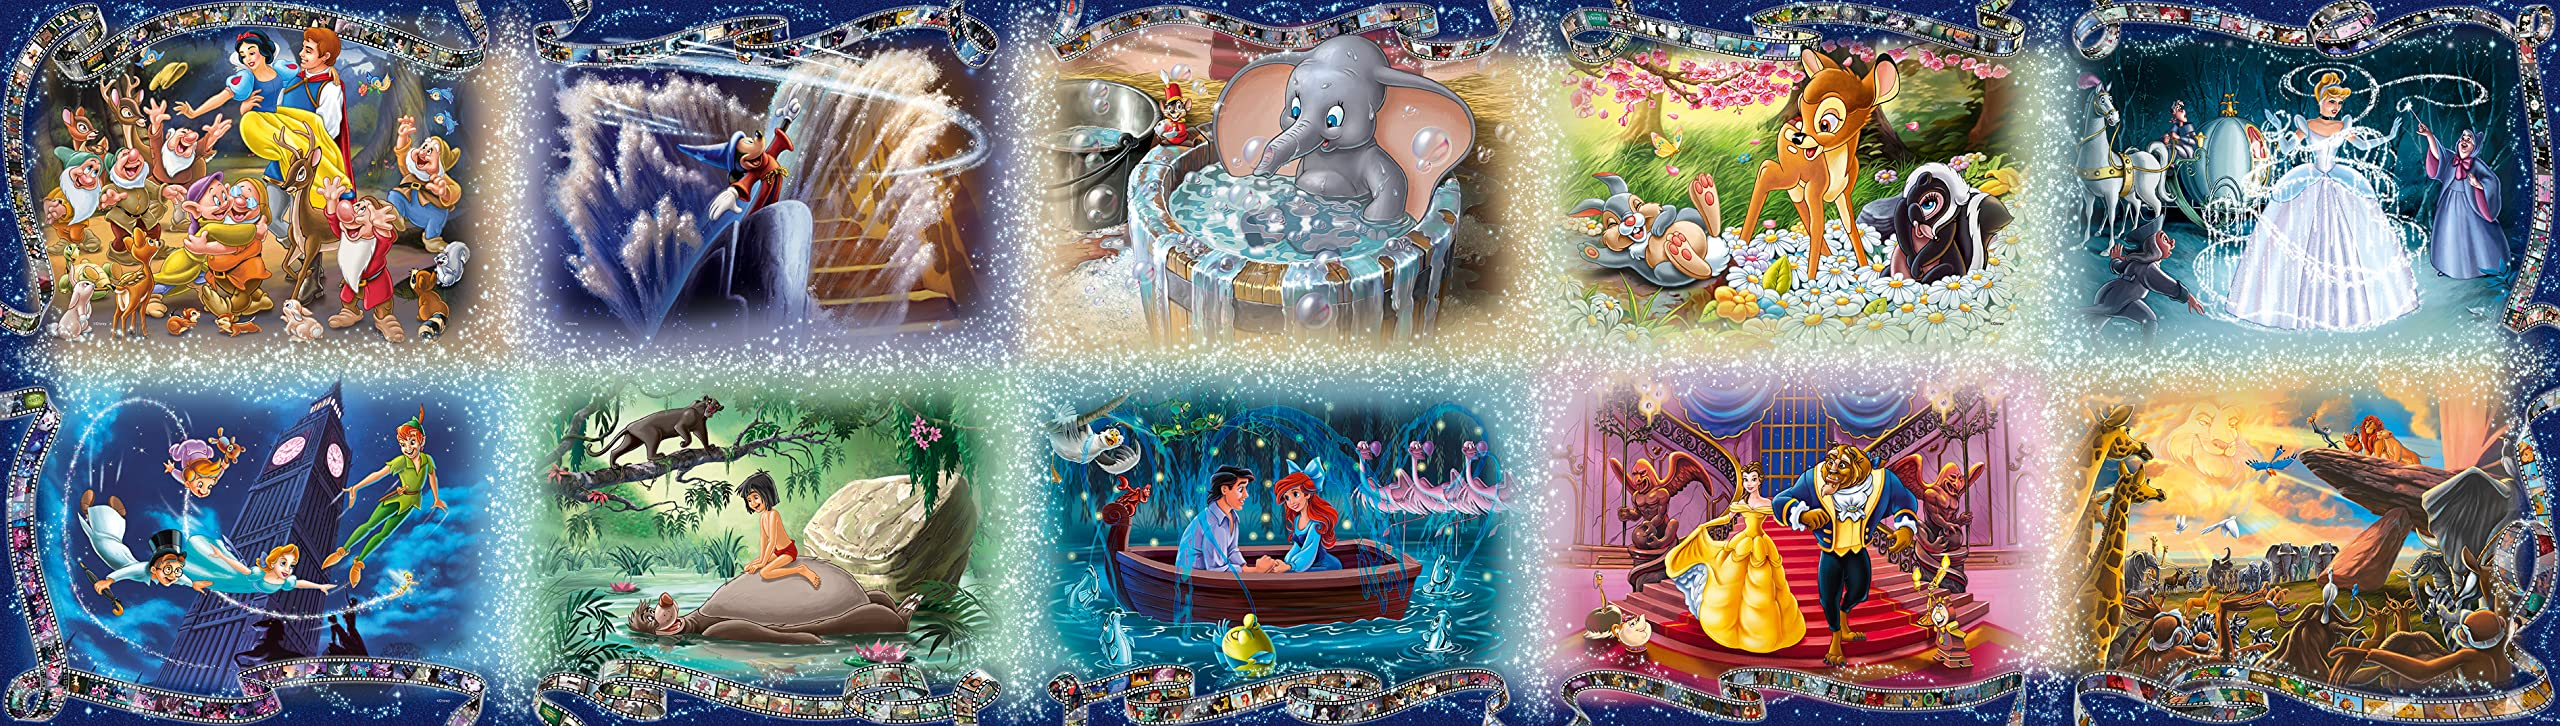 Memorable Disney Moments 40,000 Piece Puzzle